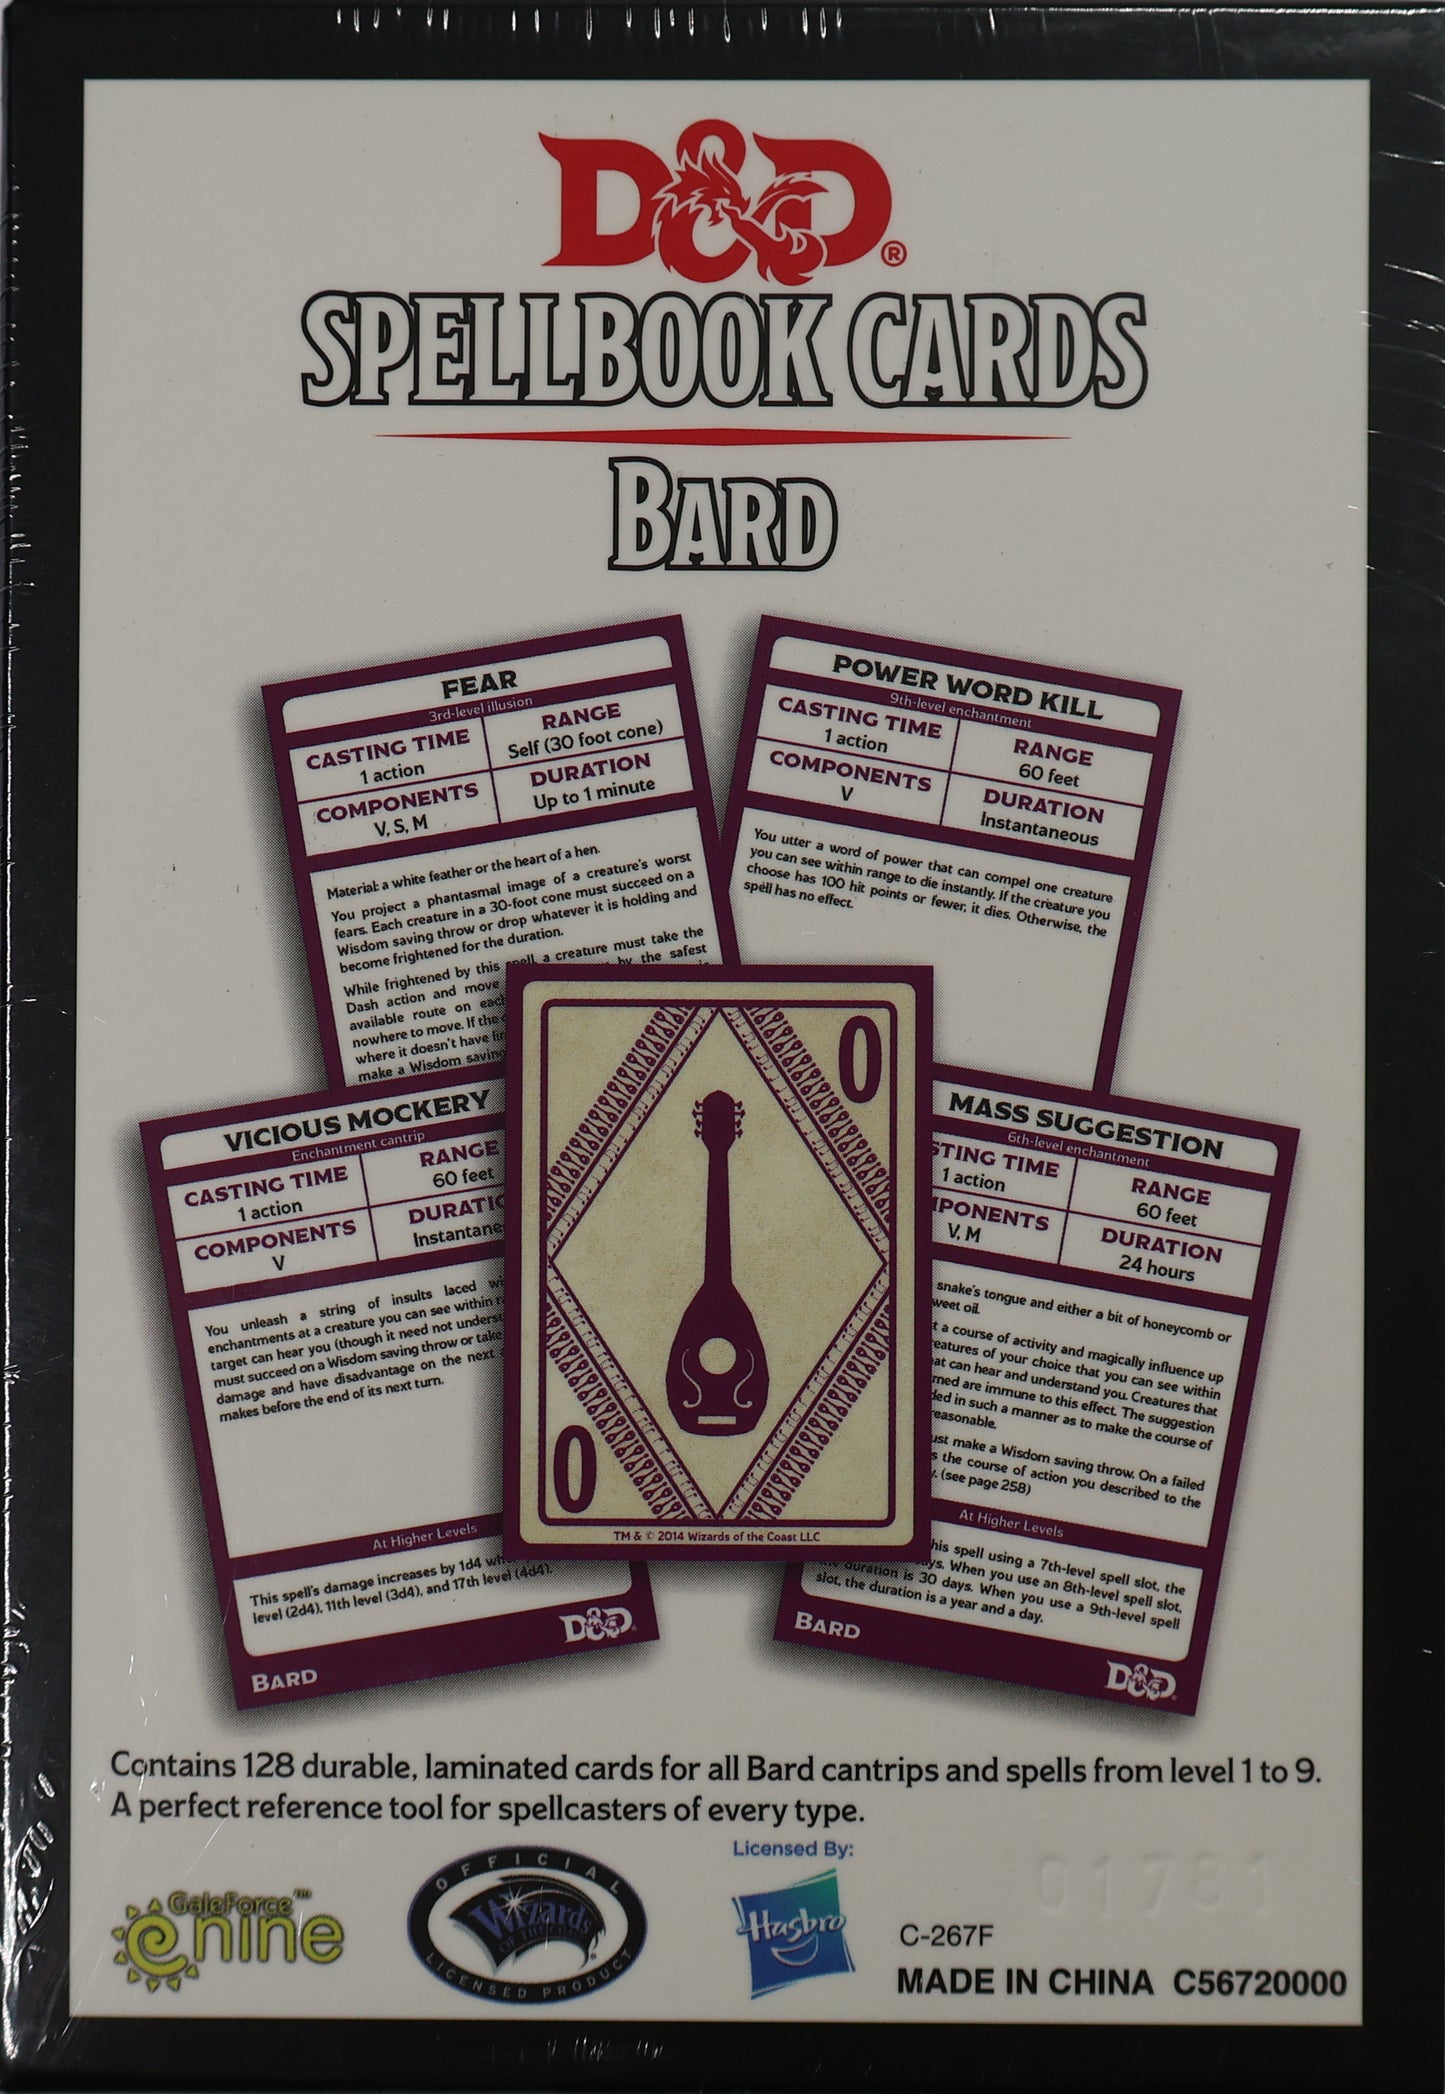 Spellbook Cards Bard